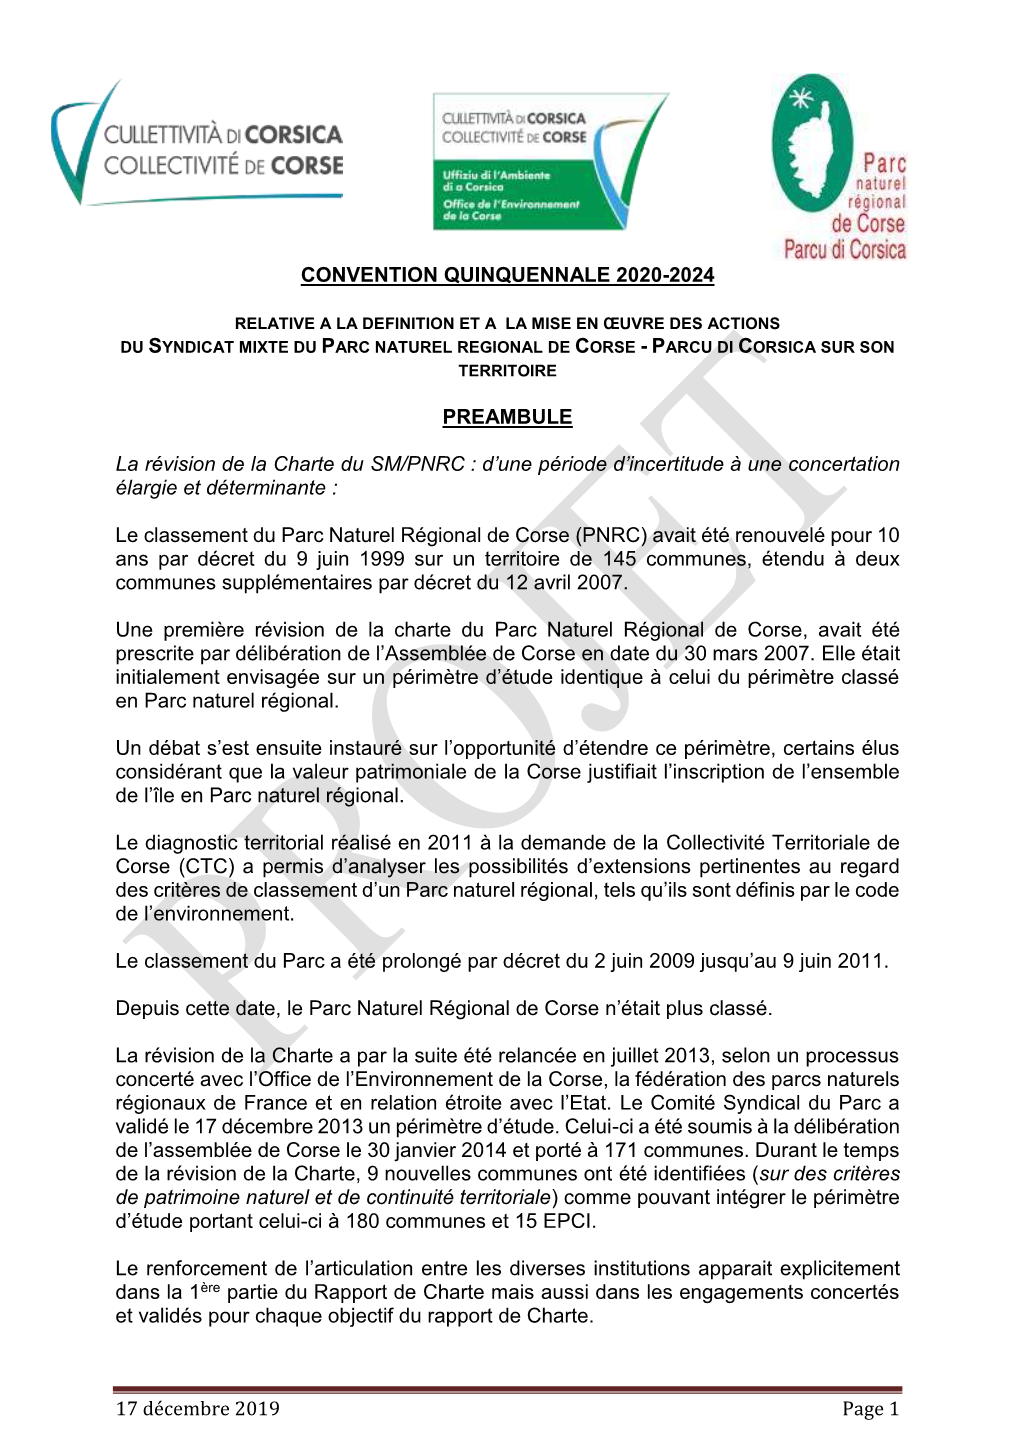 17 Décembre 2019 Page 1 CONVENTION QUINQUENNALE 2020-2024 PREAMBULE La Révision De La Charte Du SM/PNRC : D'une Période D